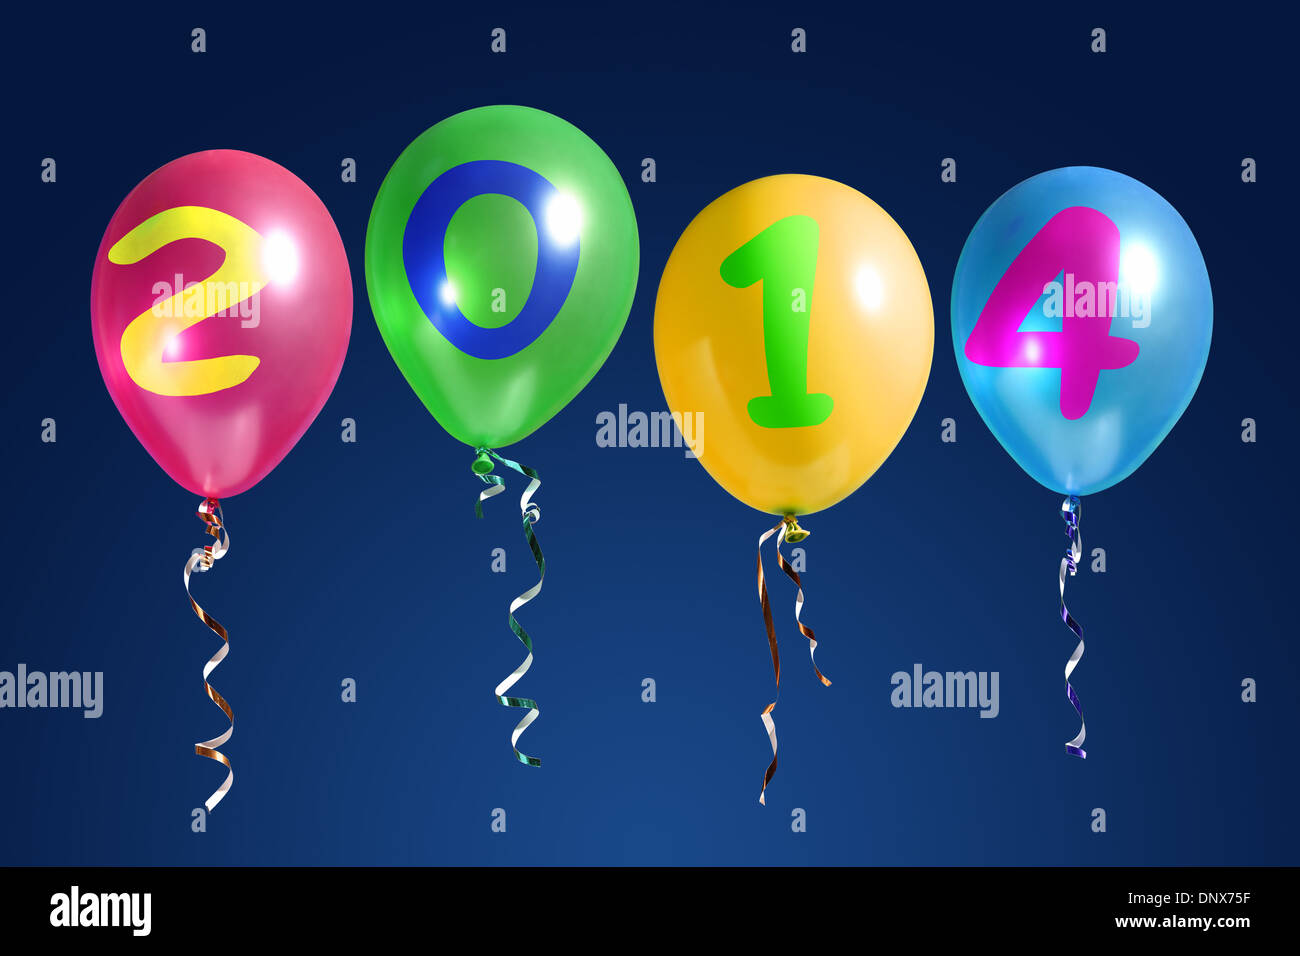 Cuatro globos de colores con los dígitos del Año Nuevo 2014 sobre fondo azul oscuro Foto de stock